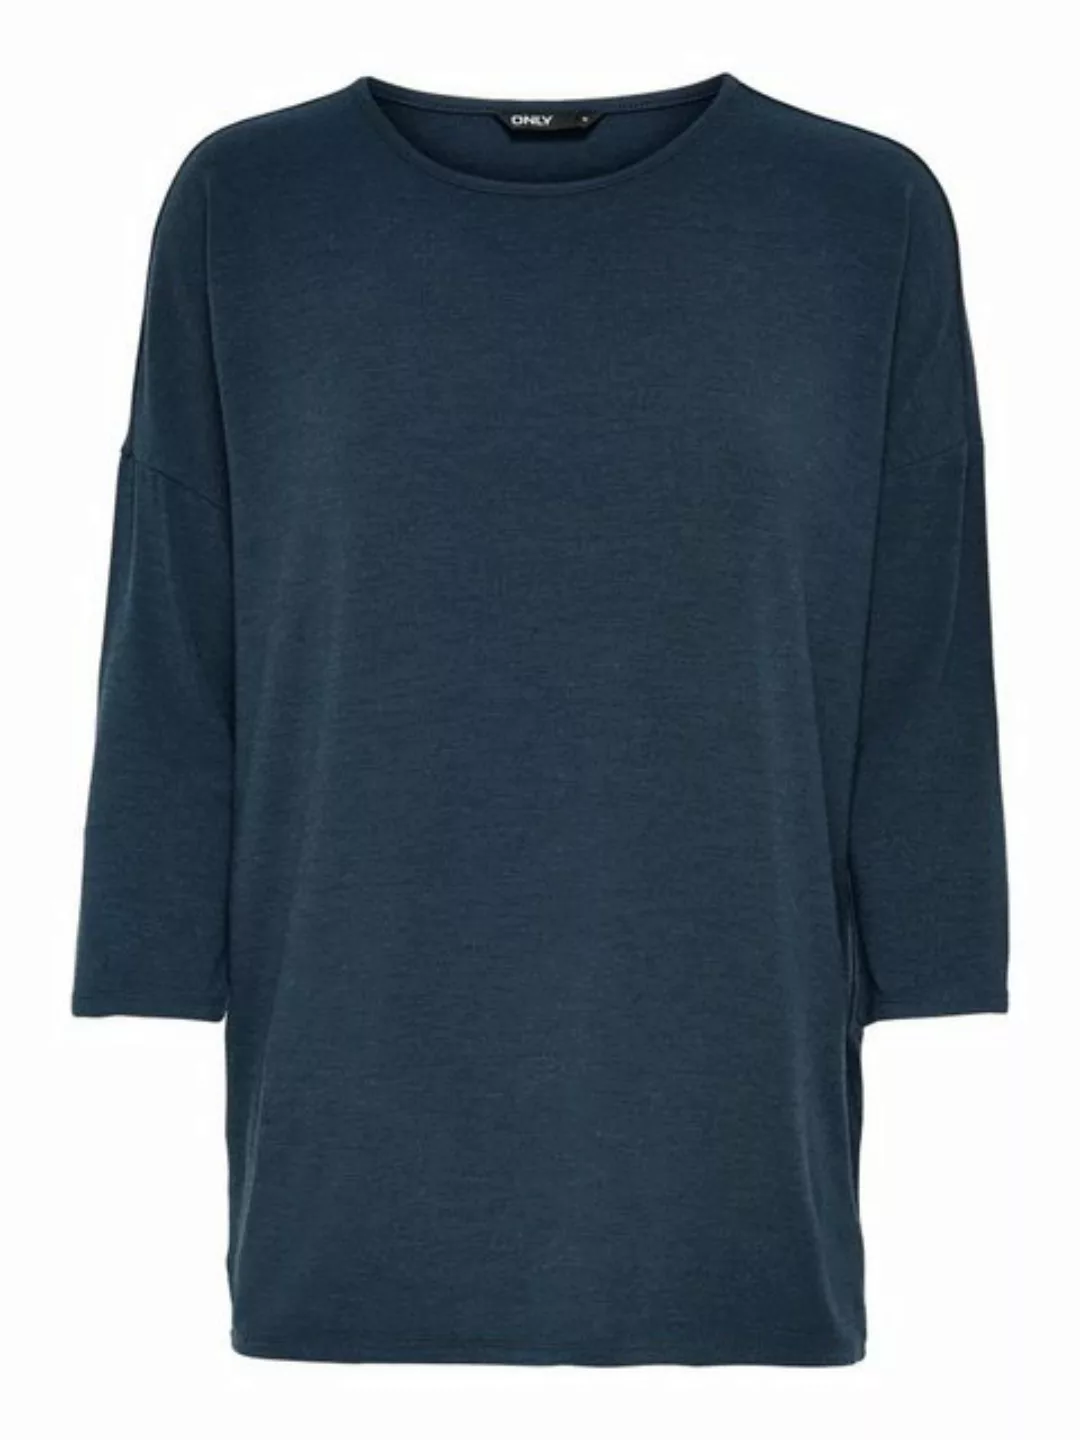 ONLY Strickpullover Dünner Strickpullover 3/4 Langarm Sweater Shirt 4504 in günstig online kaufen